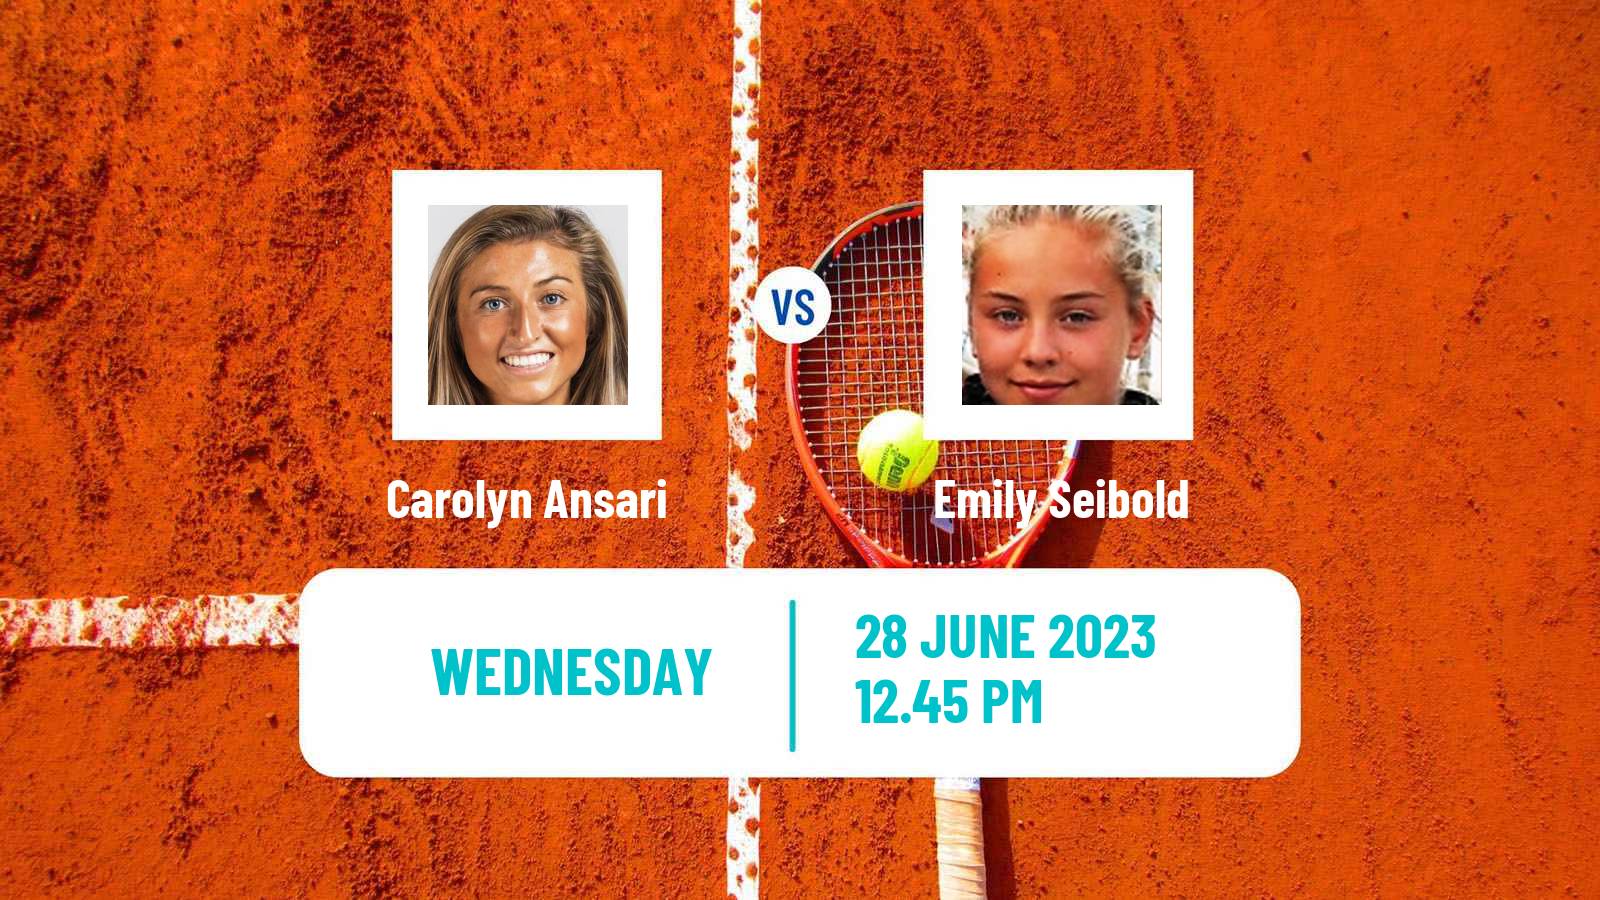 Tennis ITF W25 Santo Domingo 4 Women Carolyn Ansari - Emily Seibold